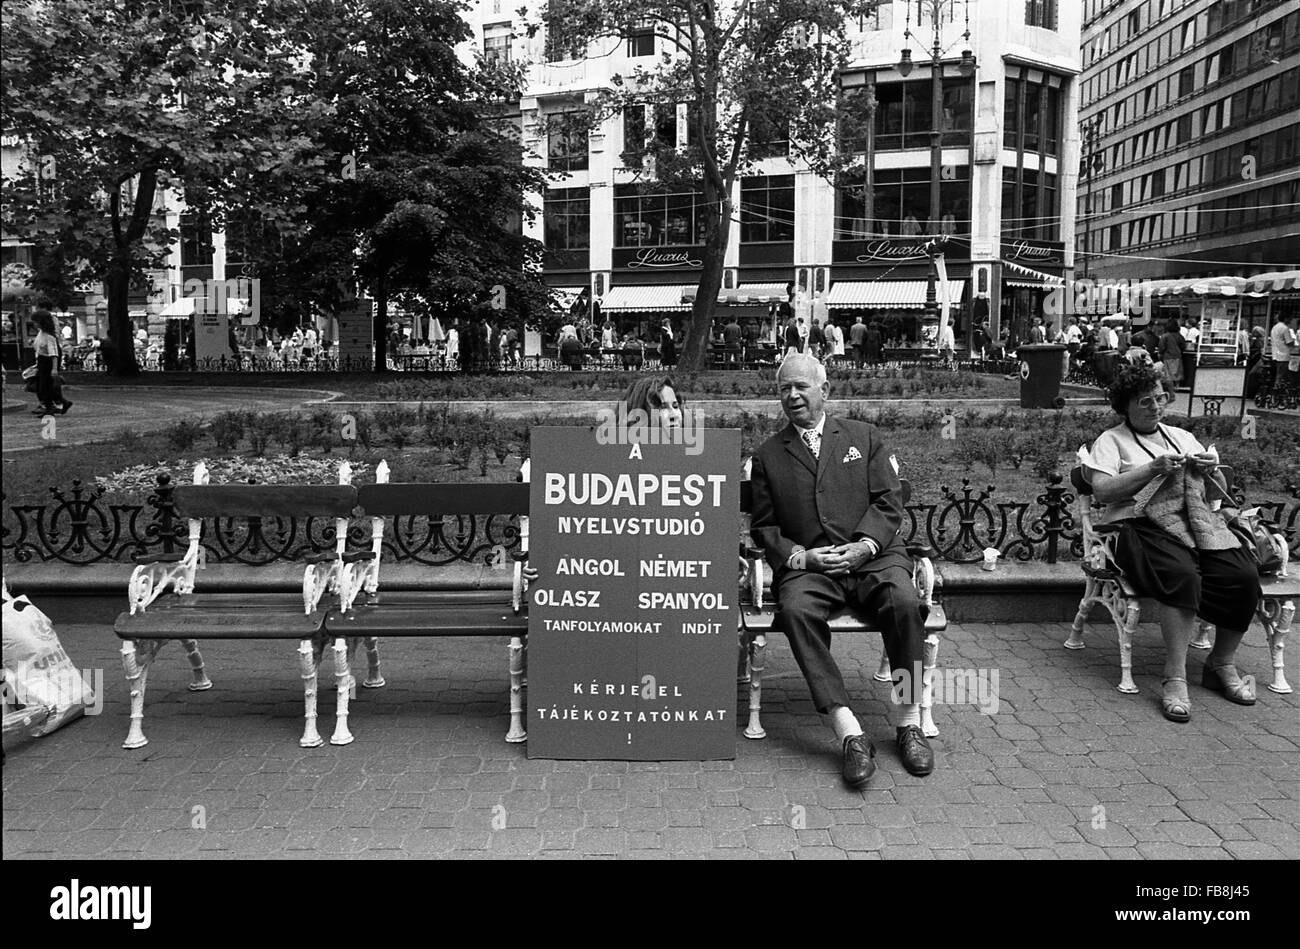 Regard sur Bupapest au moment des années 90. - 1990 - Hongrie / Budapest - Regard sur Bupapest au moment des années 90. Vie quotidienne --scène. Dans un jardin public, une femme est le tricot alors qu'un homme est situé à côté d'une fille tenant un avis de publicité pour une école d'enseignement des langues étrangères. - Philippe Gras / Le Pictorium Banque D'Images